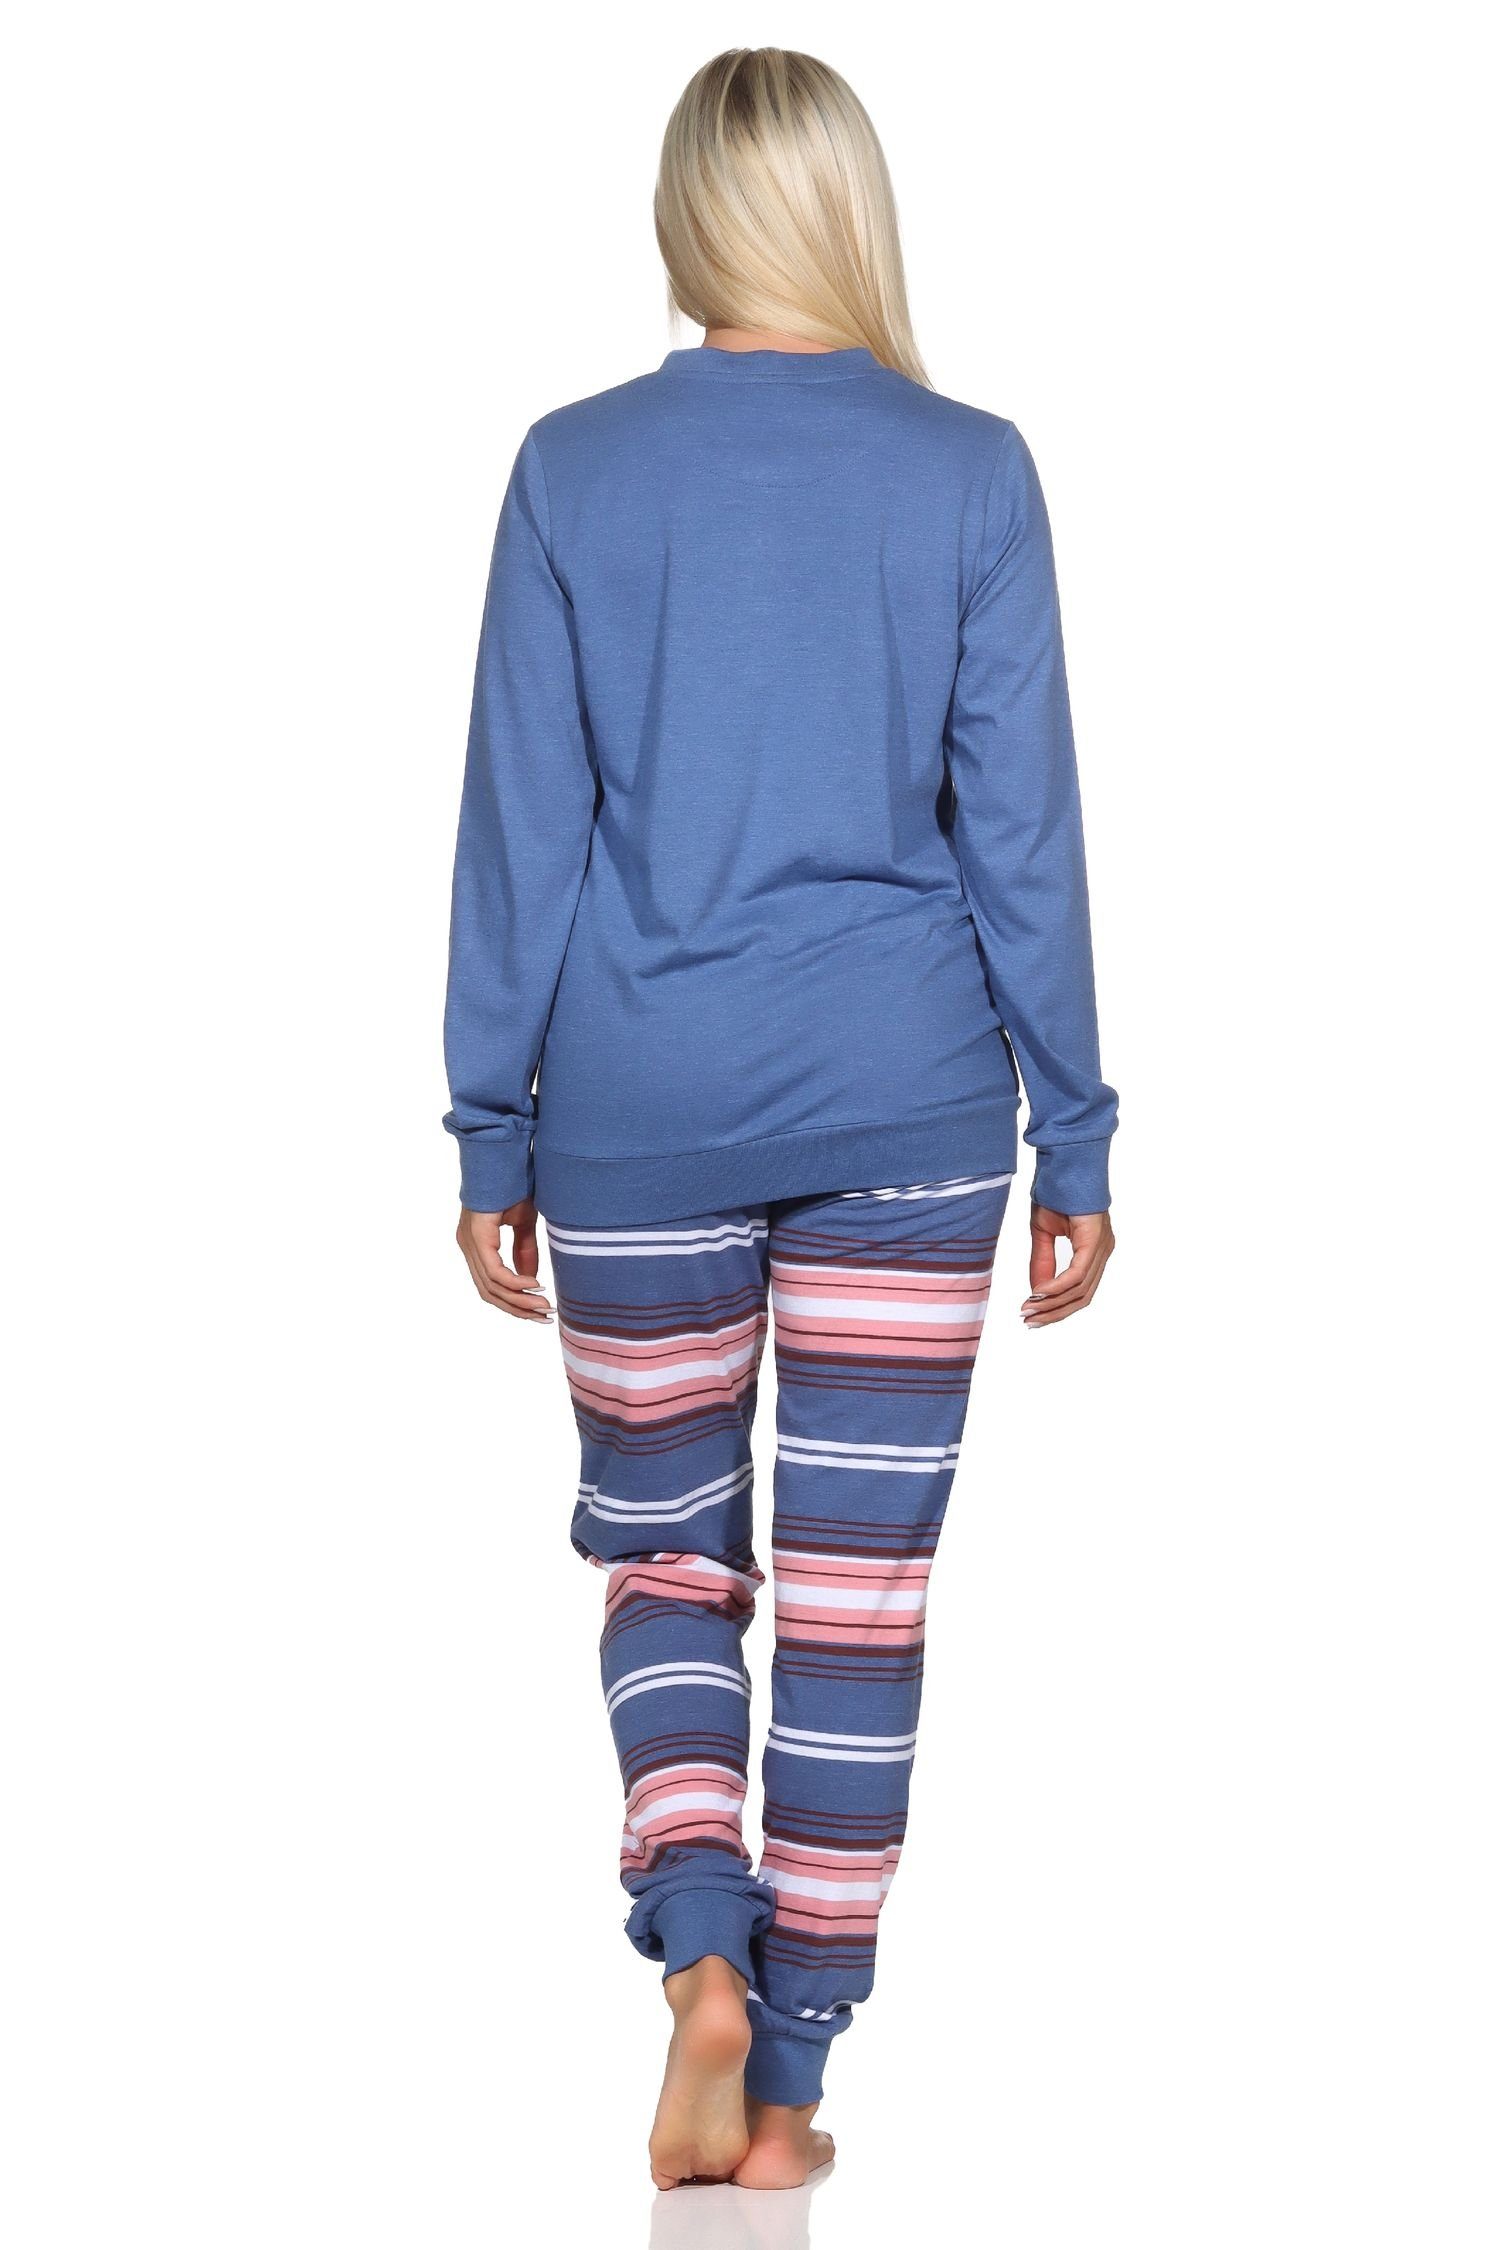 Damen gestreifter langarm und blau-mel. mit Bündchen Pyjama Hose Pyjama Normann Normann